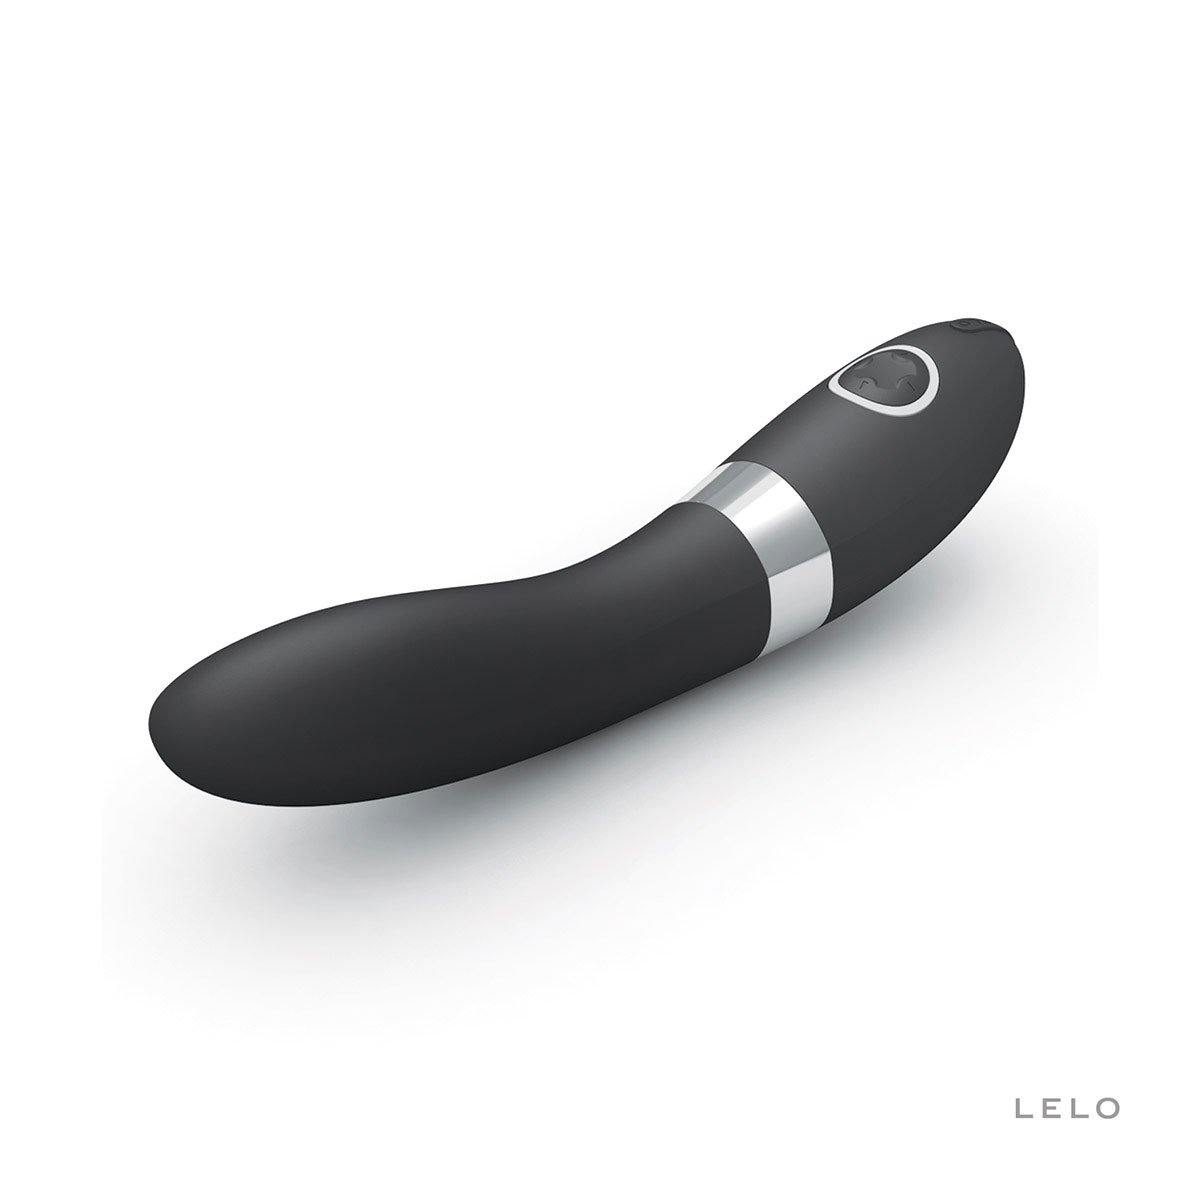 Lelo Elise 2 - Buy At Luxury Toy X - Free 3-Day Shipping